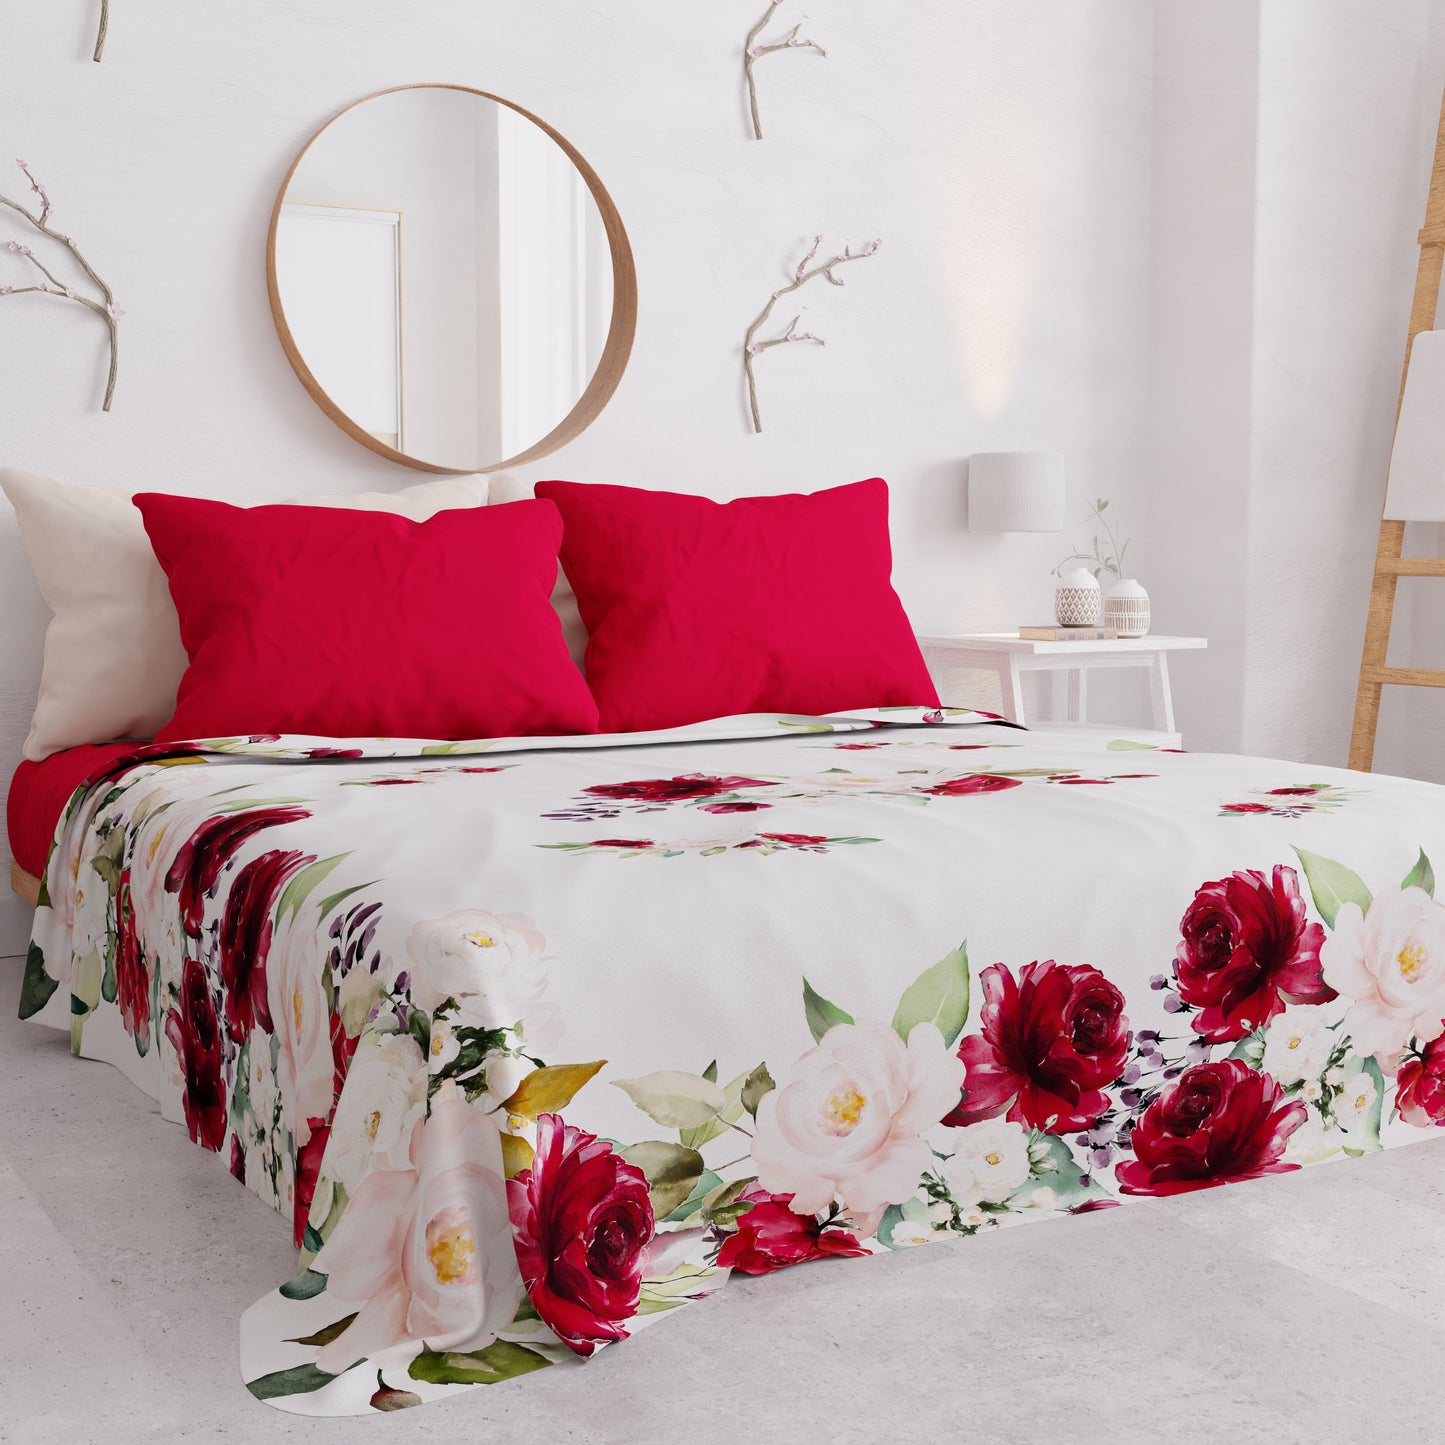 Summer Bedspread, Light Blanket, Bedspread Sheets, Bordeaux Floral